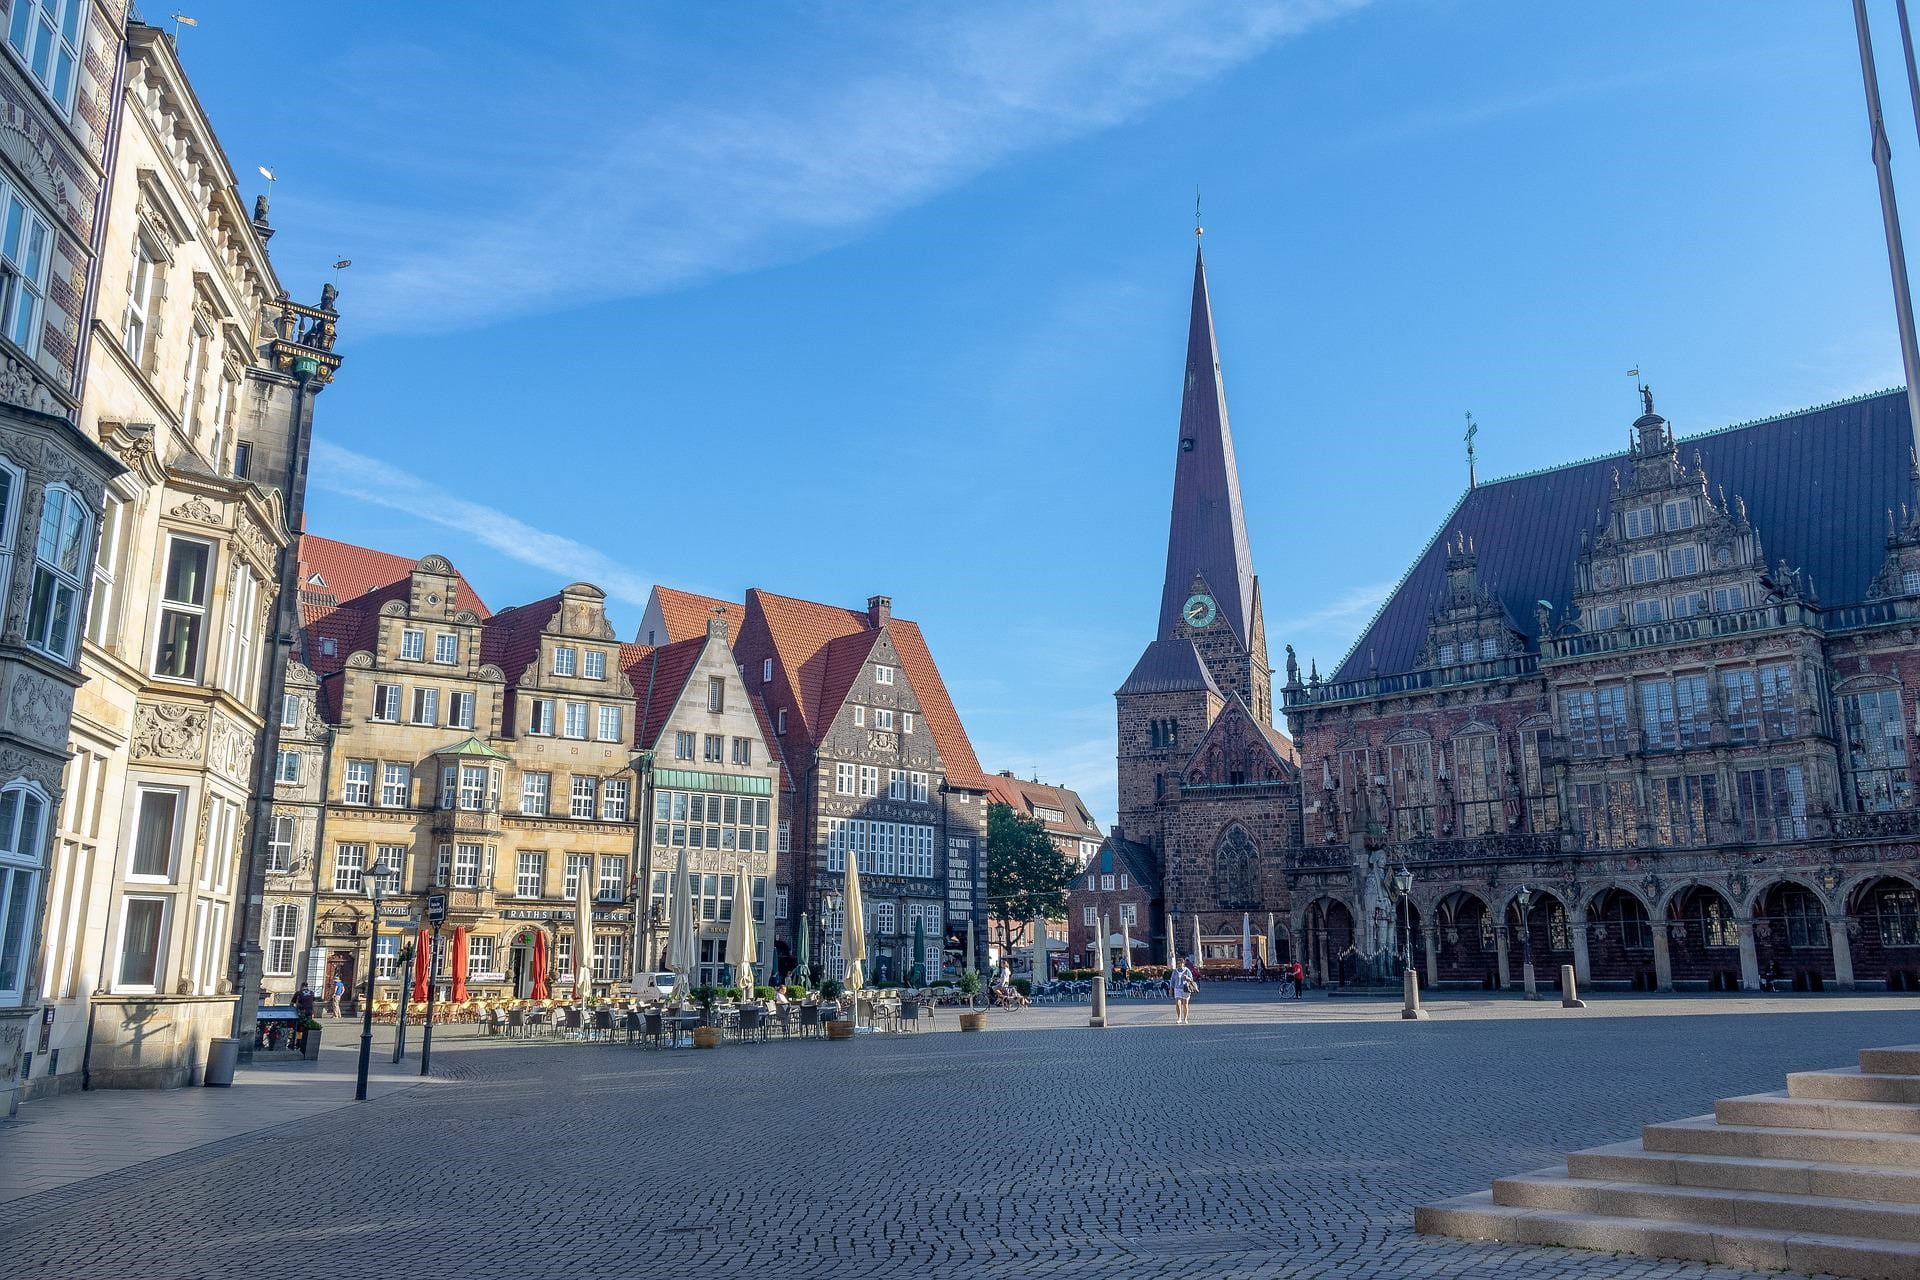 Die Innenstadt Bremens bei strahlend blauem Himmel.